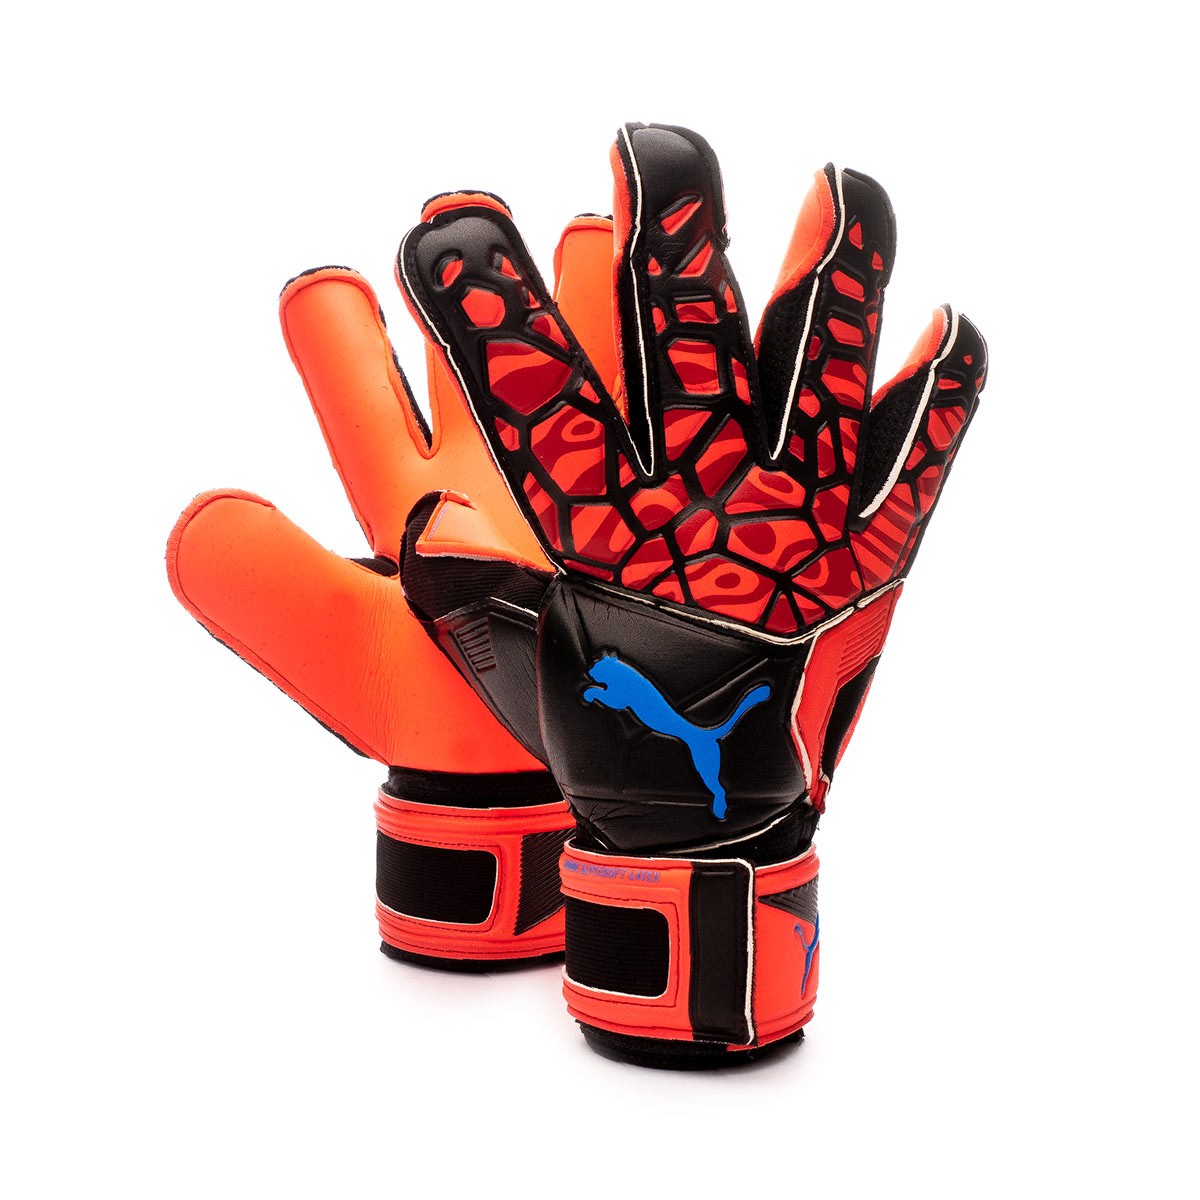 puma new goalkeeper gloves